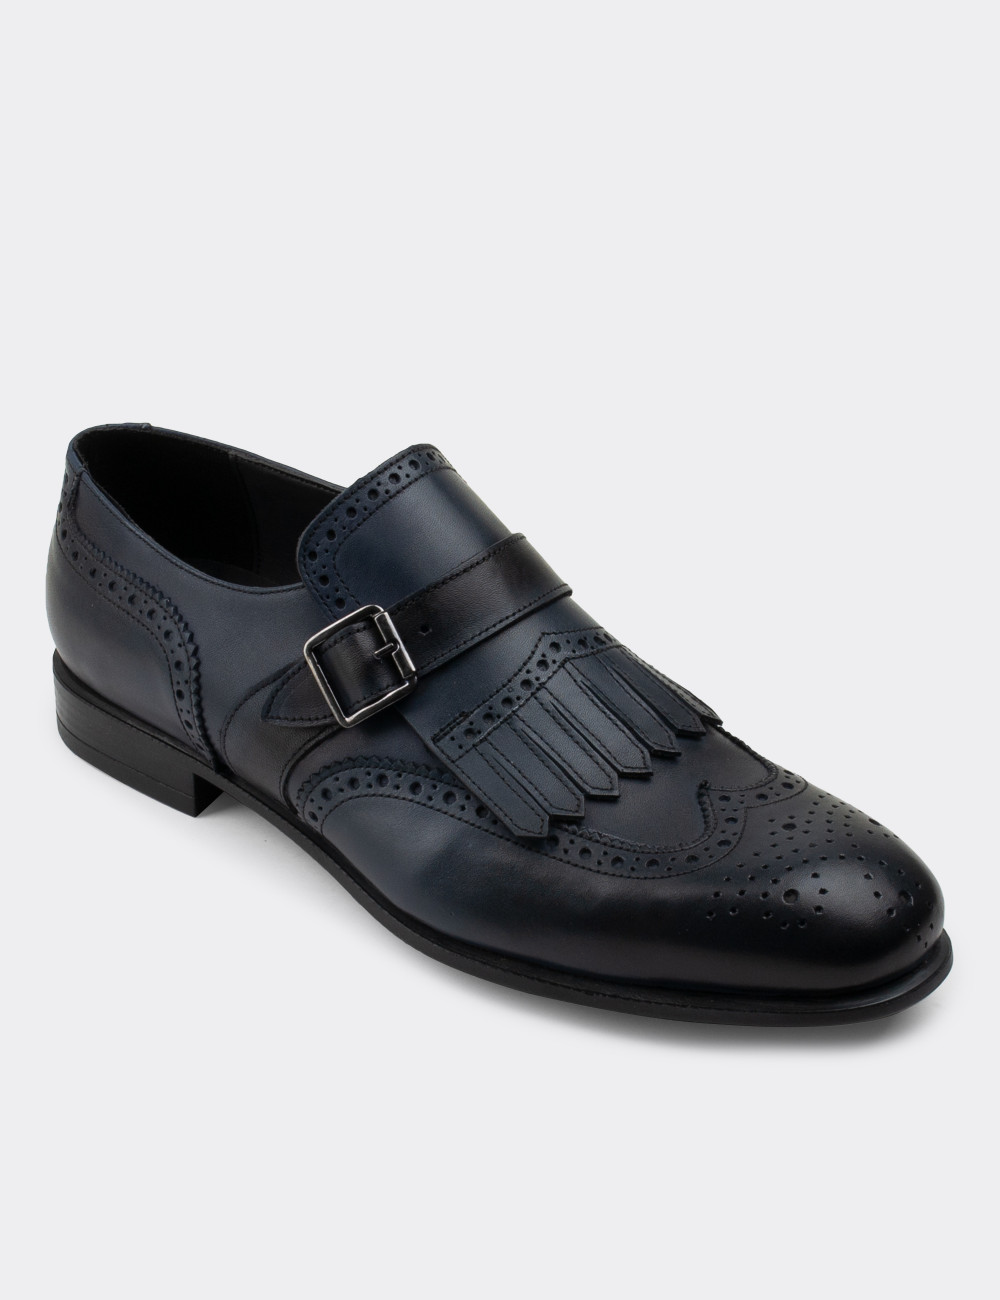 Hakiki Deri Lacivert Özel Üretim Klasik Erkek Ayakkabı - 01680MLCVC03